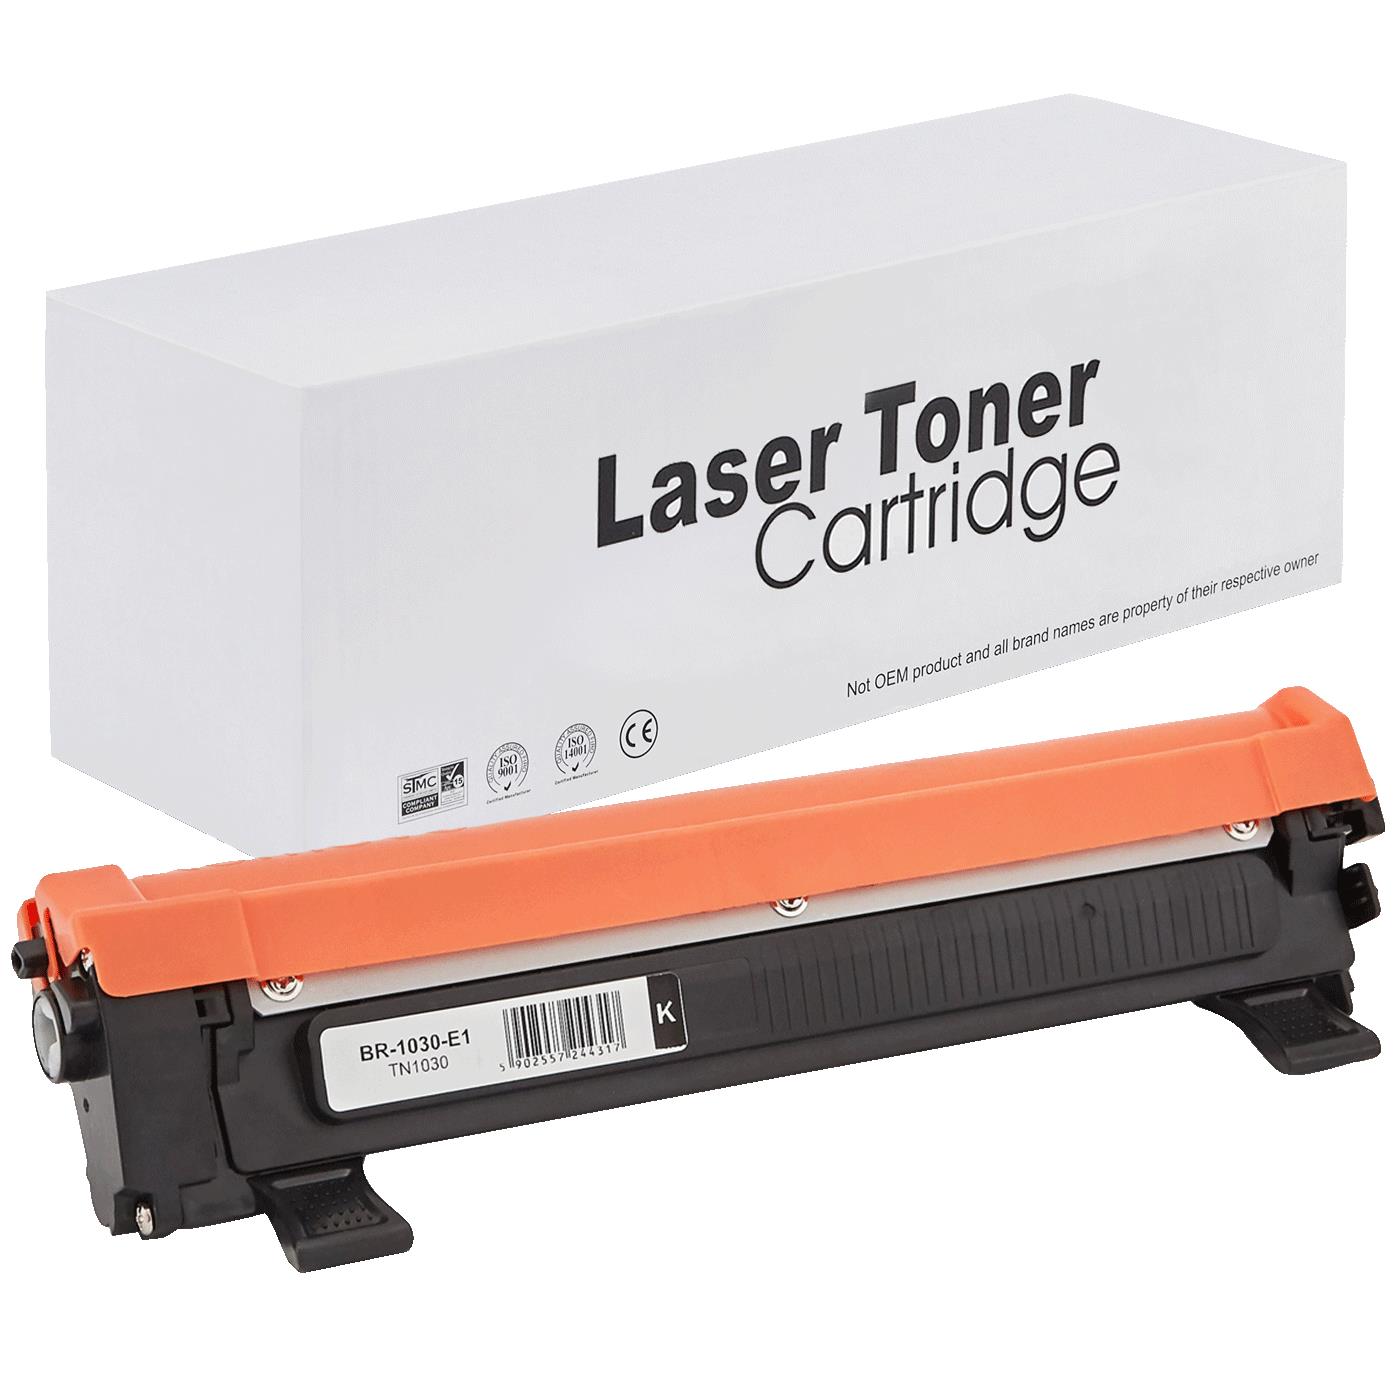 съвместима тонер касета за принтери и печатащи устройства на Brother 1110E Toner BR-1030 | TN1030 / TN1050 / TN-1030. Ниски цени, прецизно изпълнение, високо качество.